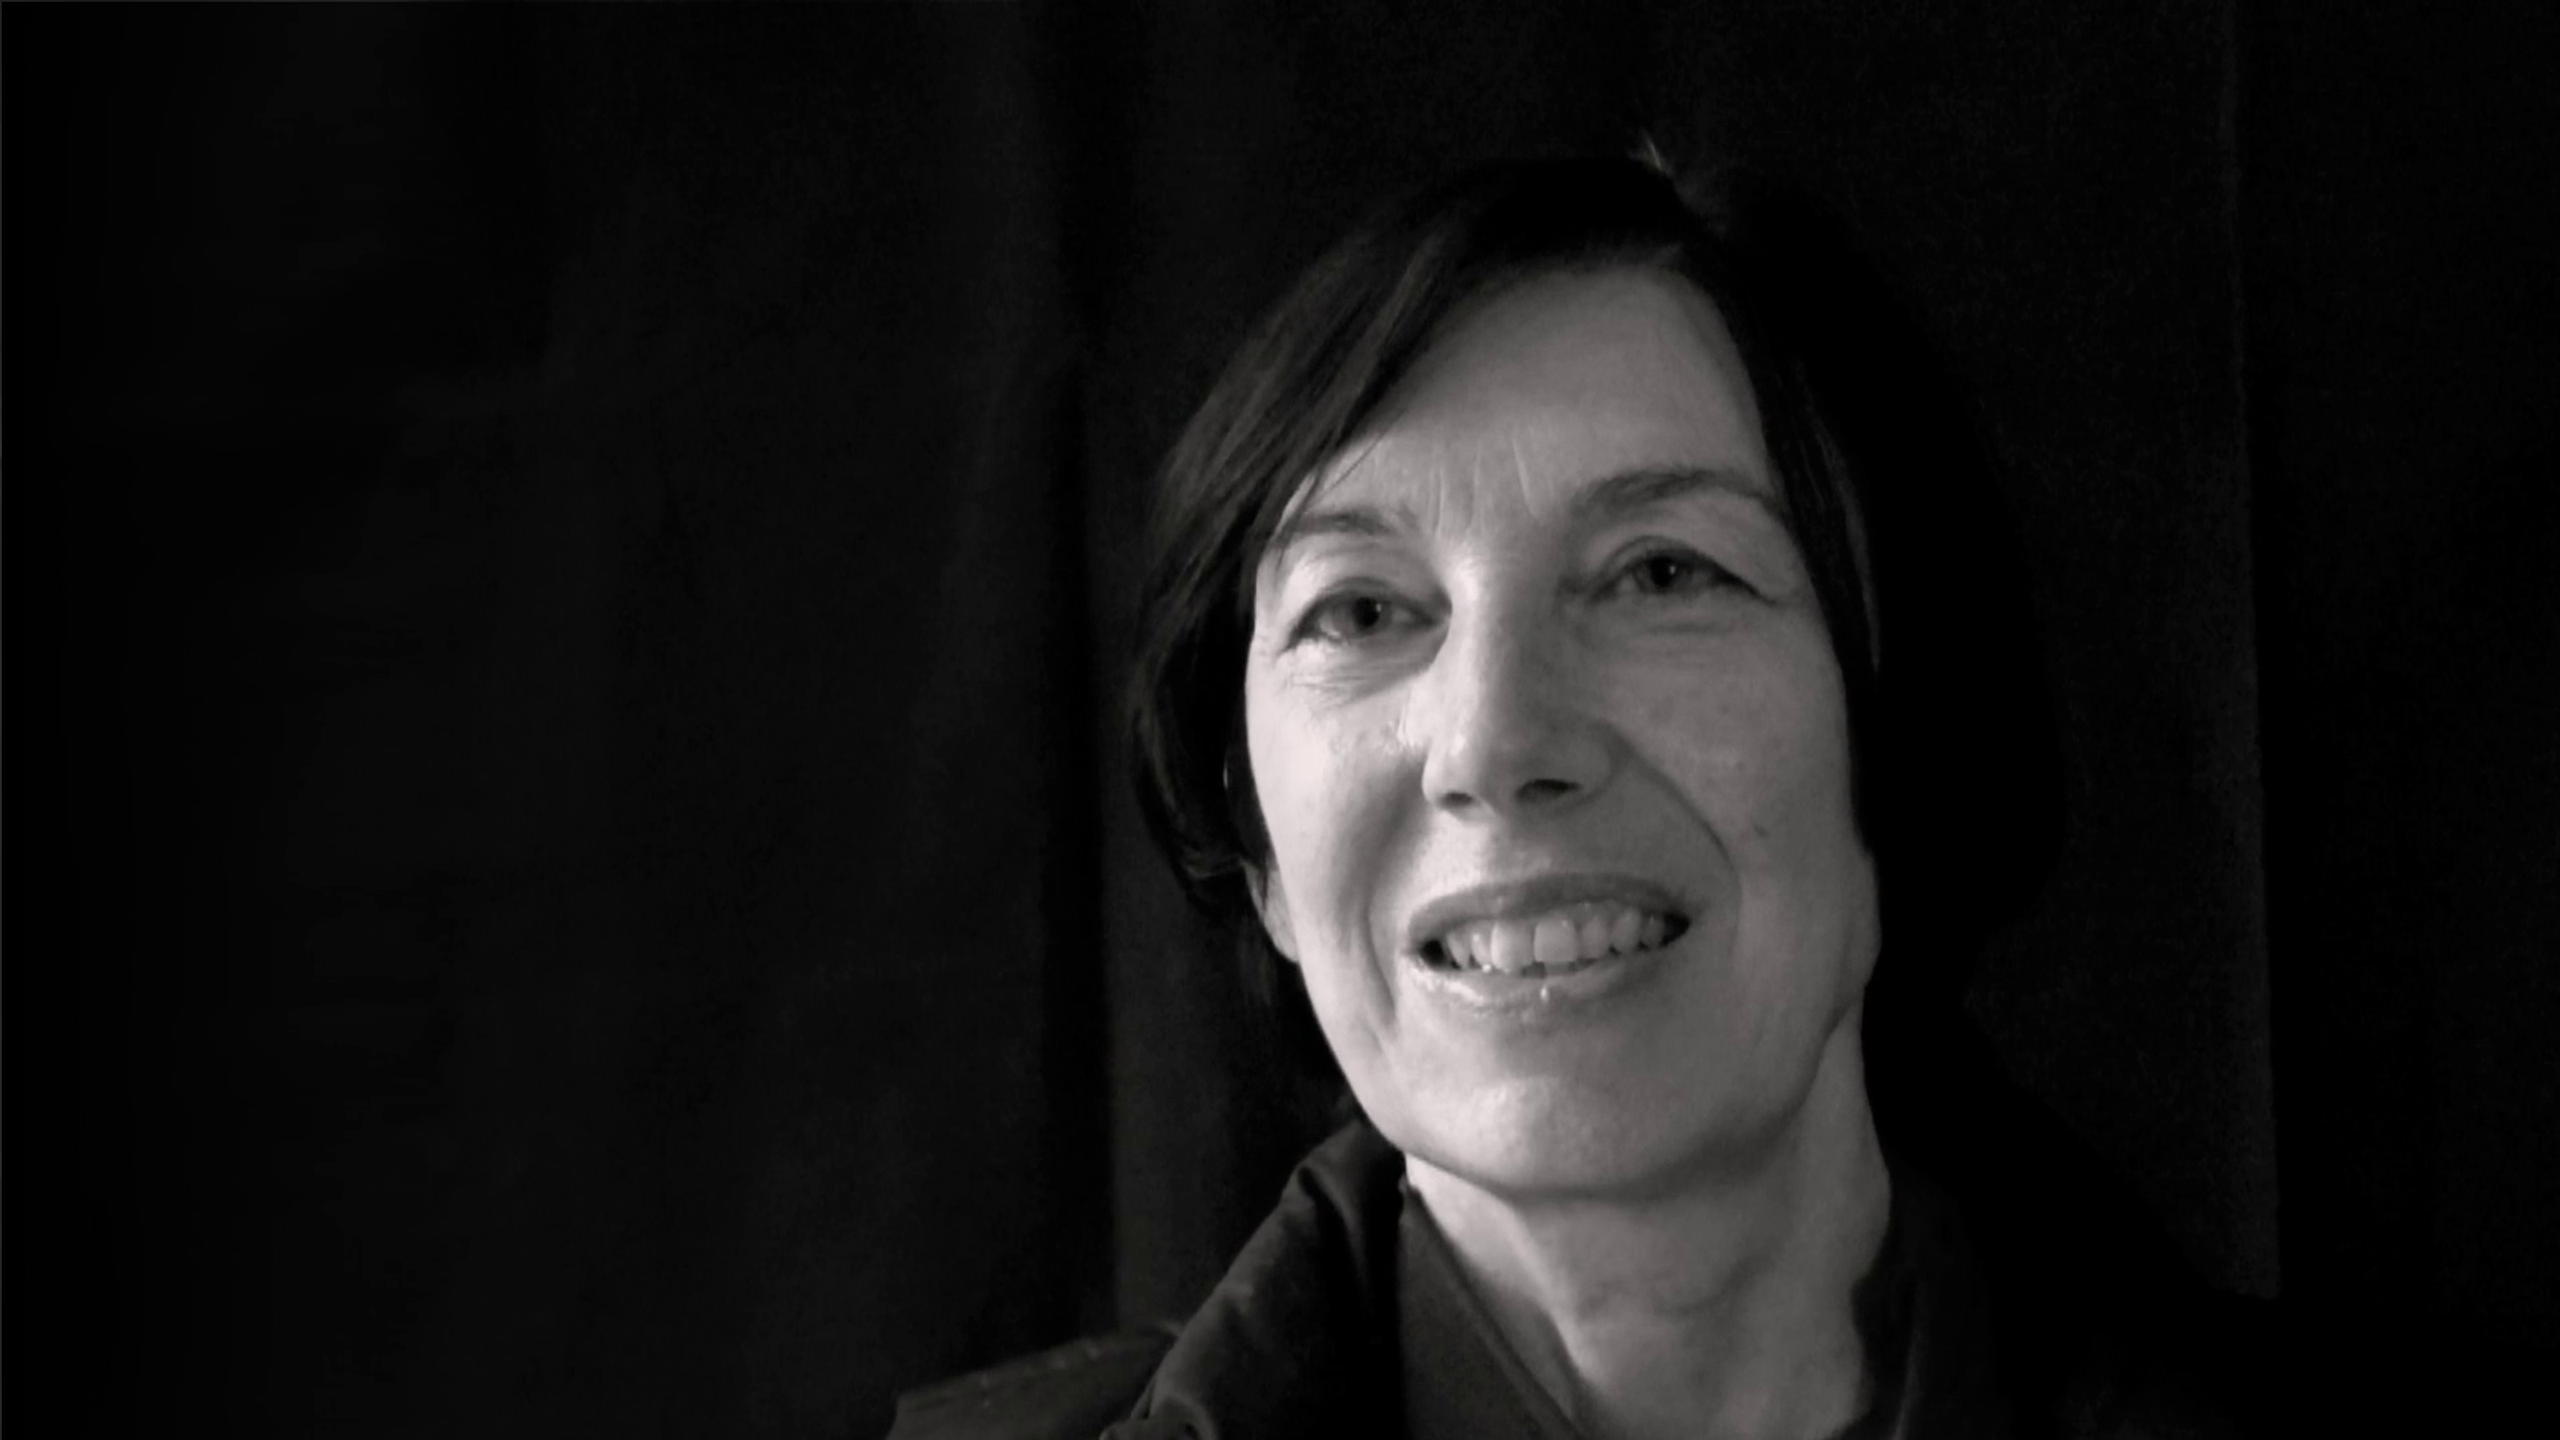 Ute Weber-Woisetschläger - founder of Integral Art Lab